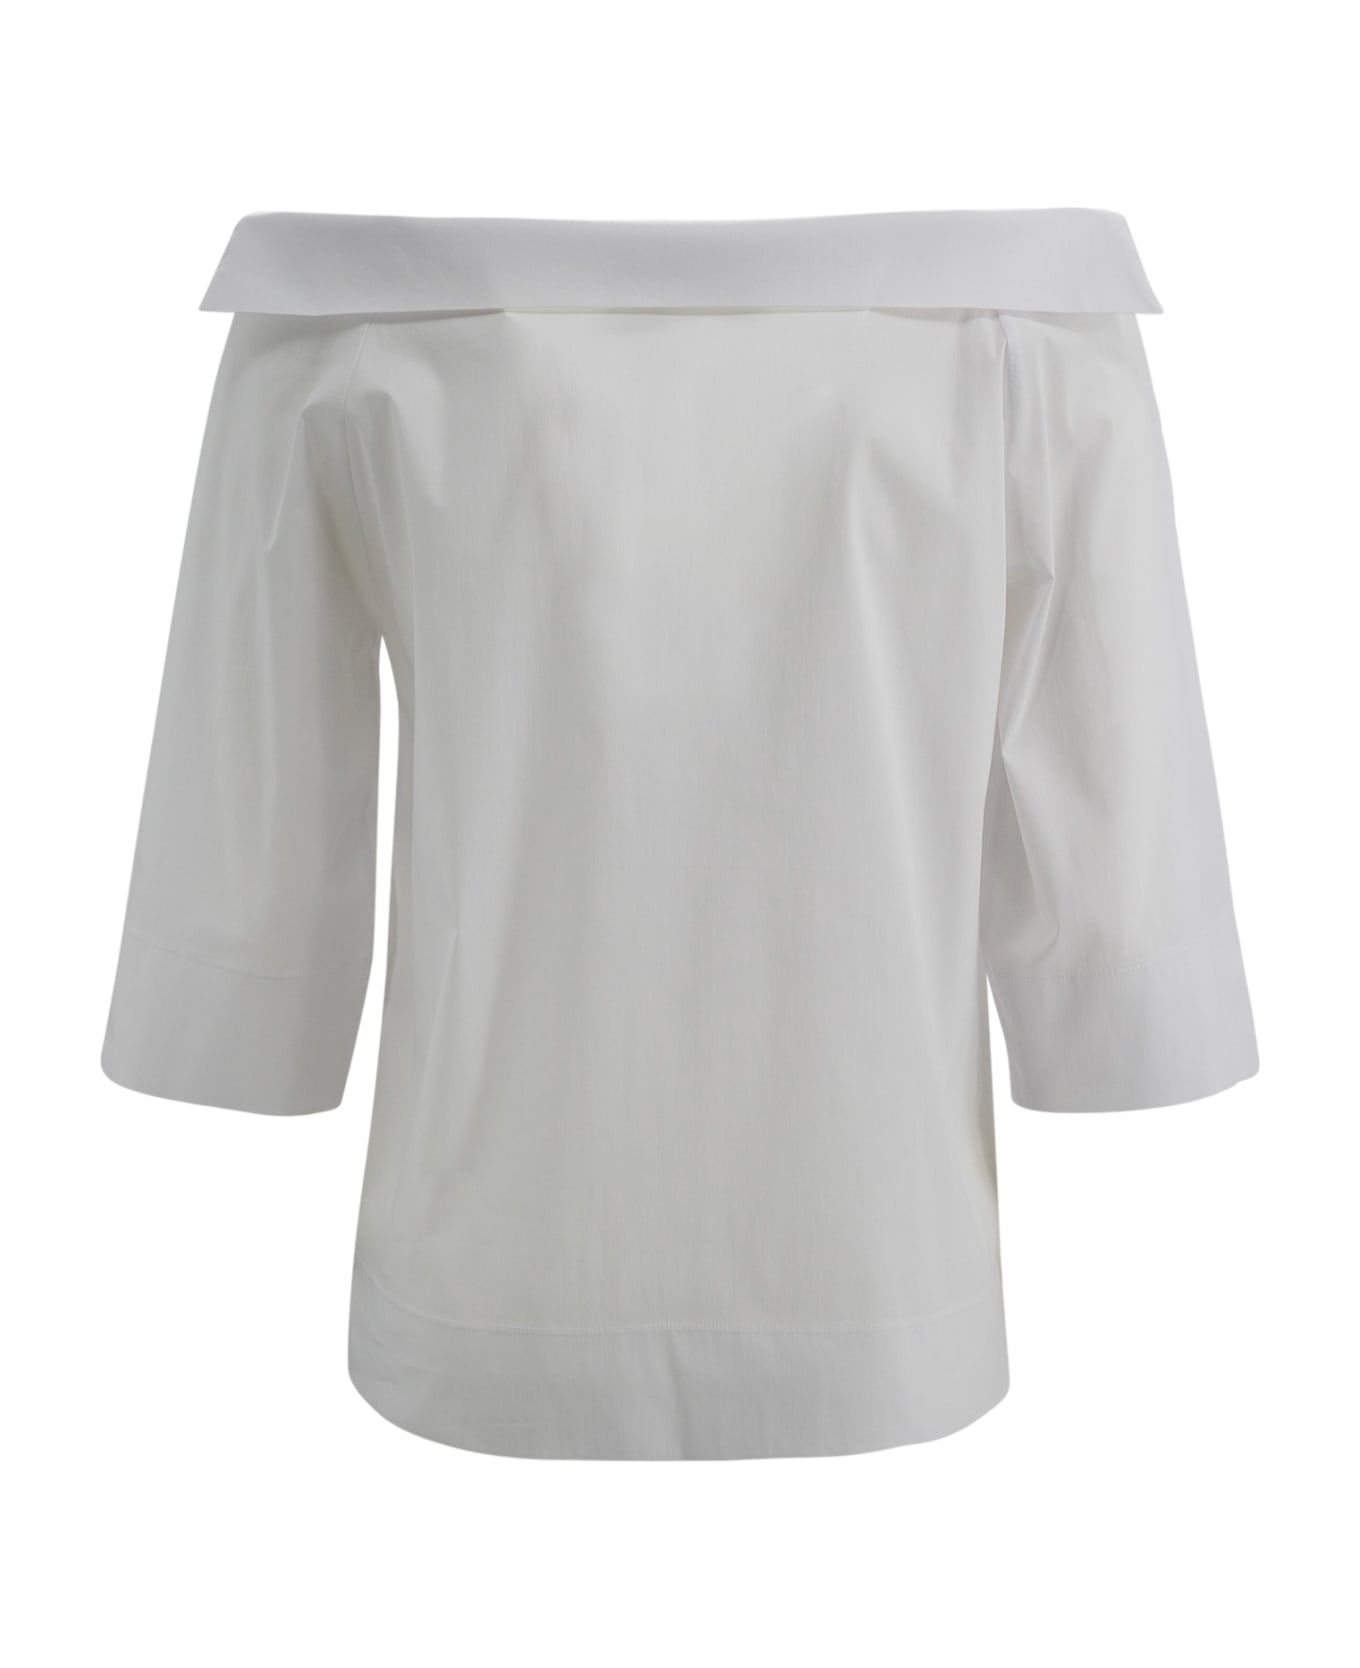 D.Exterior Cotton Shirt - White